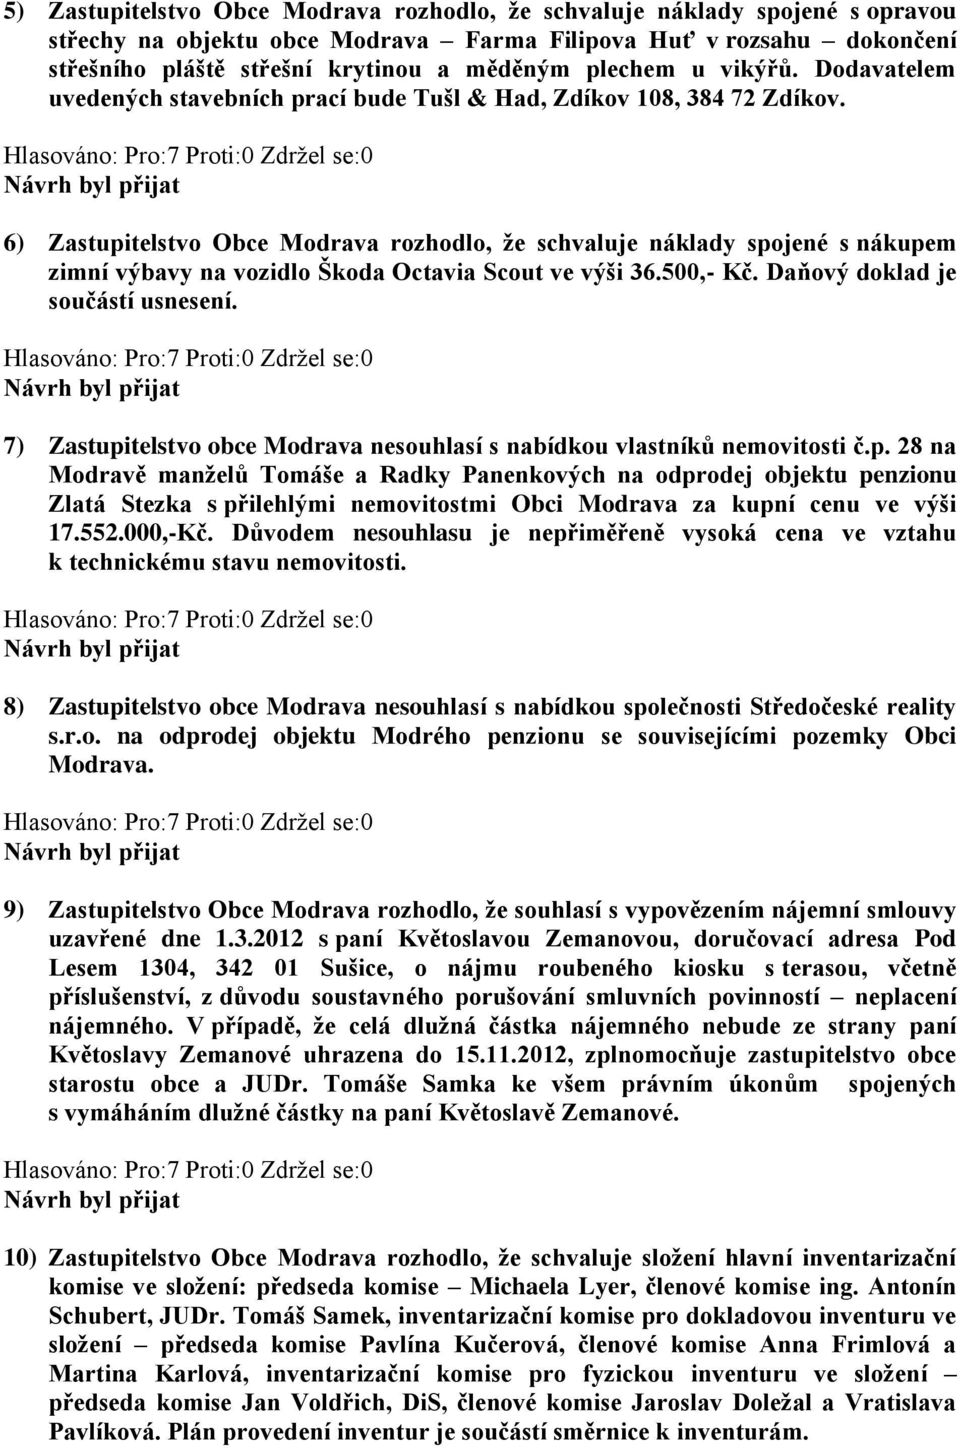 6) Zastupitelstvo Obce Modrava rozhodlo, že schvaluje náklady spojené s nákupem zimní výbavy na vozidlo Škoda Octavia Scout ve výši 36.500,- Kč.